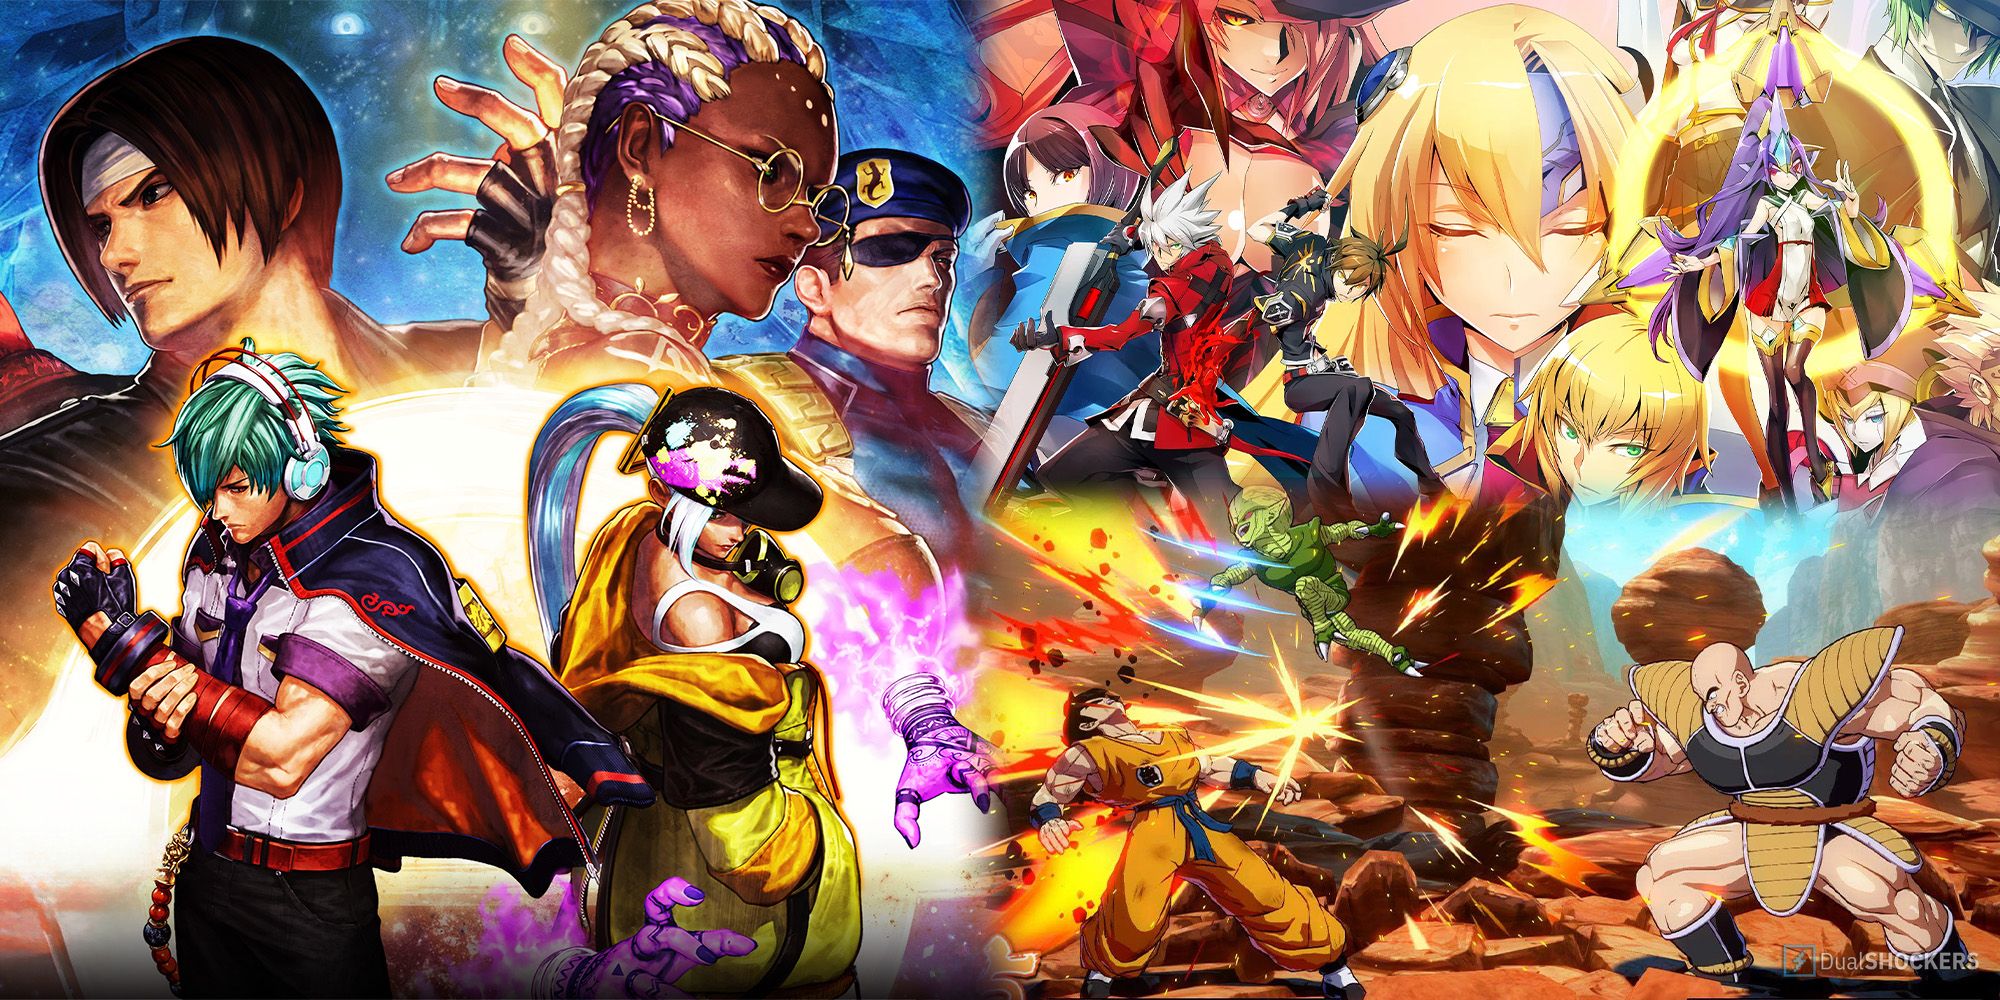 900+ Anime Warriors/fighters ideas | anime, anime warrior, anime art